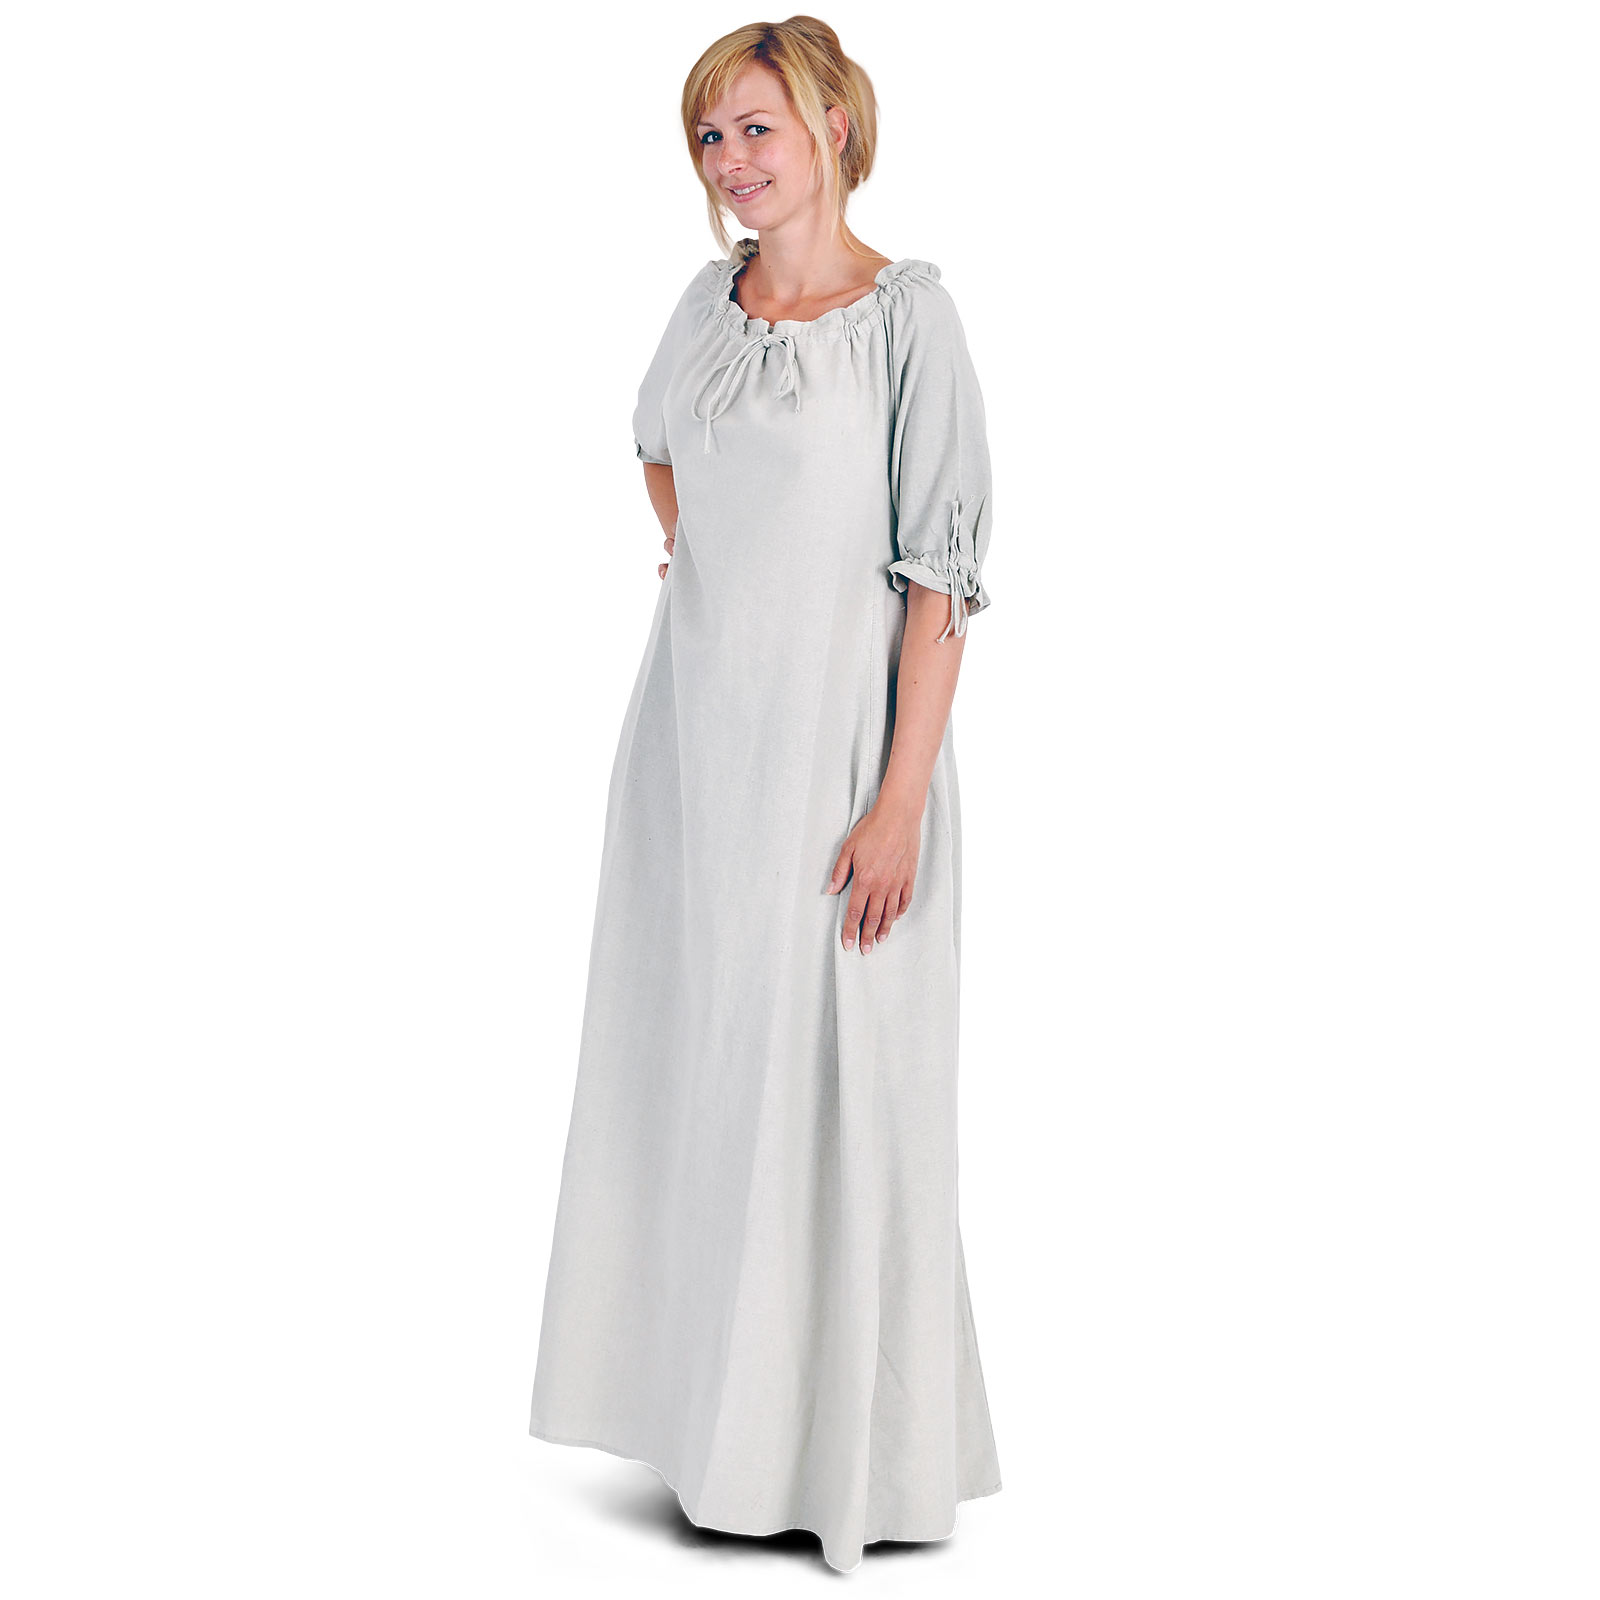 Medieval Short Sleeve Dress Natural